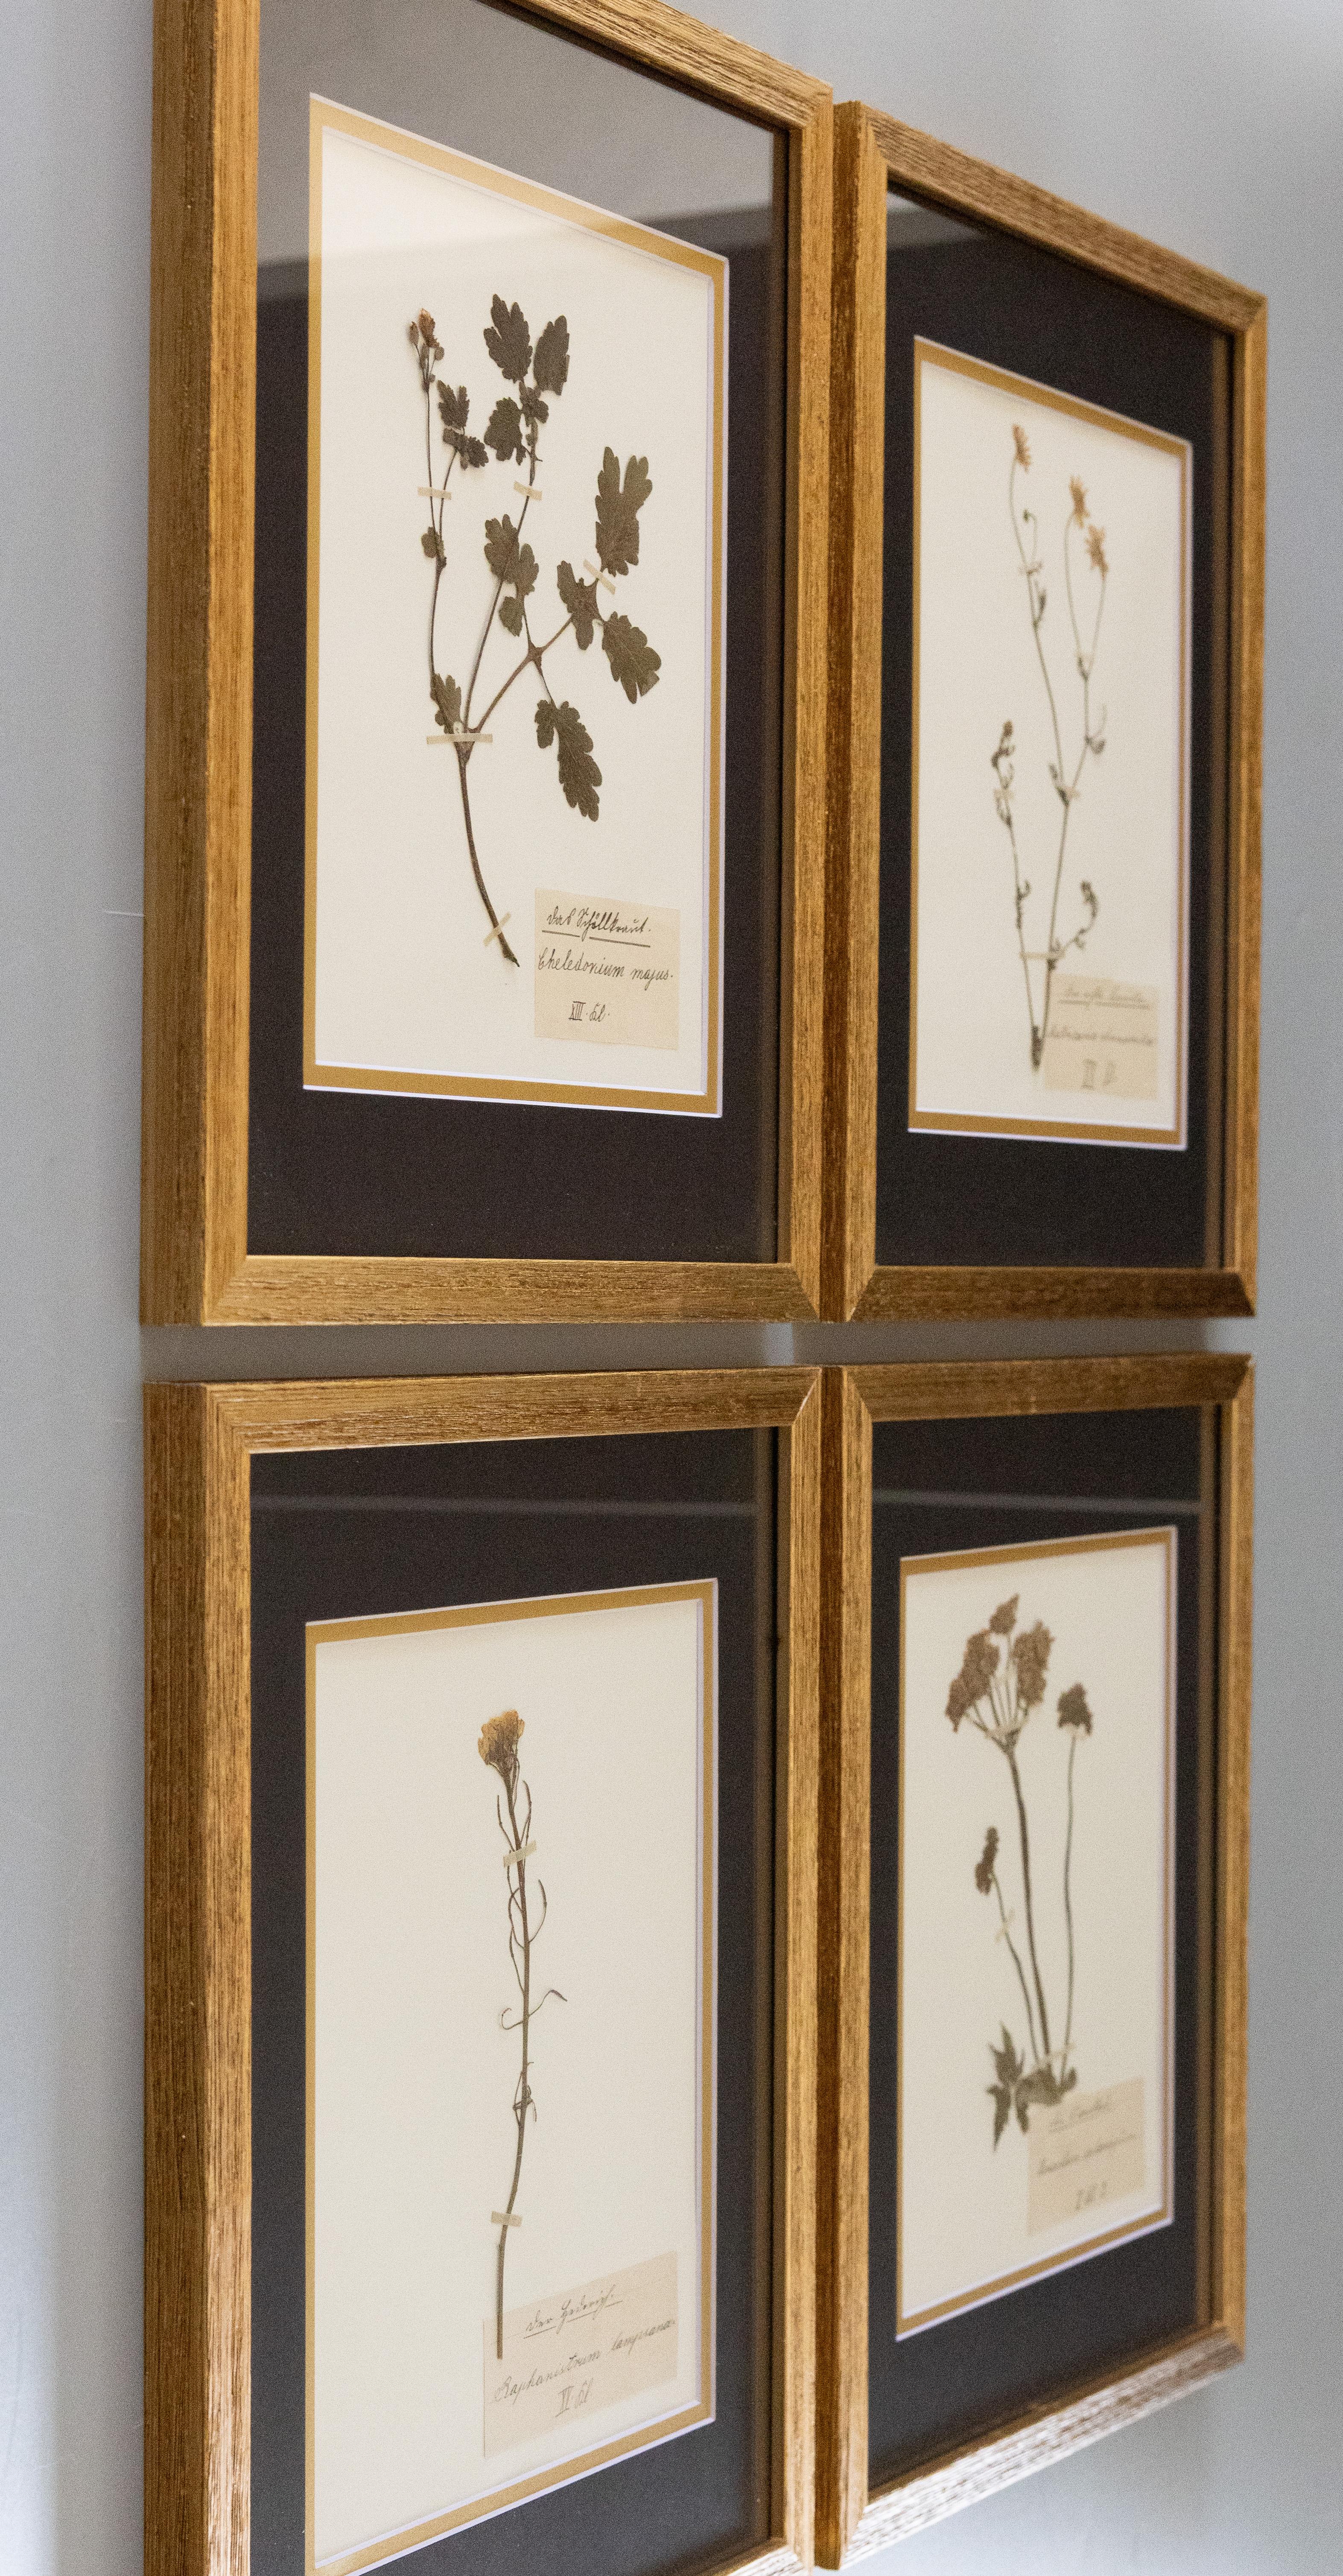 Schöne gerahmte antike Herbarium Blumenproben, gesammelt in Schweden, um 1900. Handgeschriebene lateinische wissenschaftliche und allgemeine Namen in schöner Schrift. Zu den Arten gehören Raphanistrum lampsana (Wilder Rettich), Heracleum sphondylium